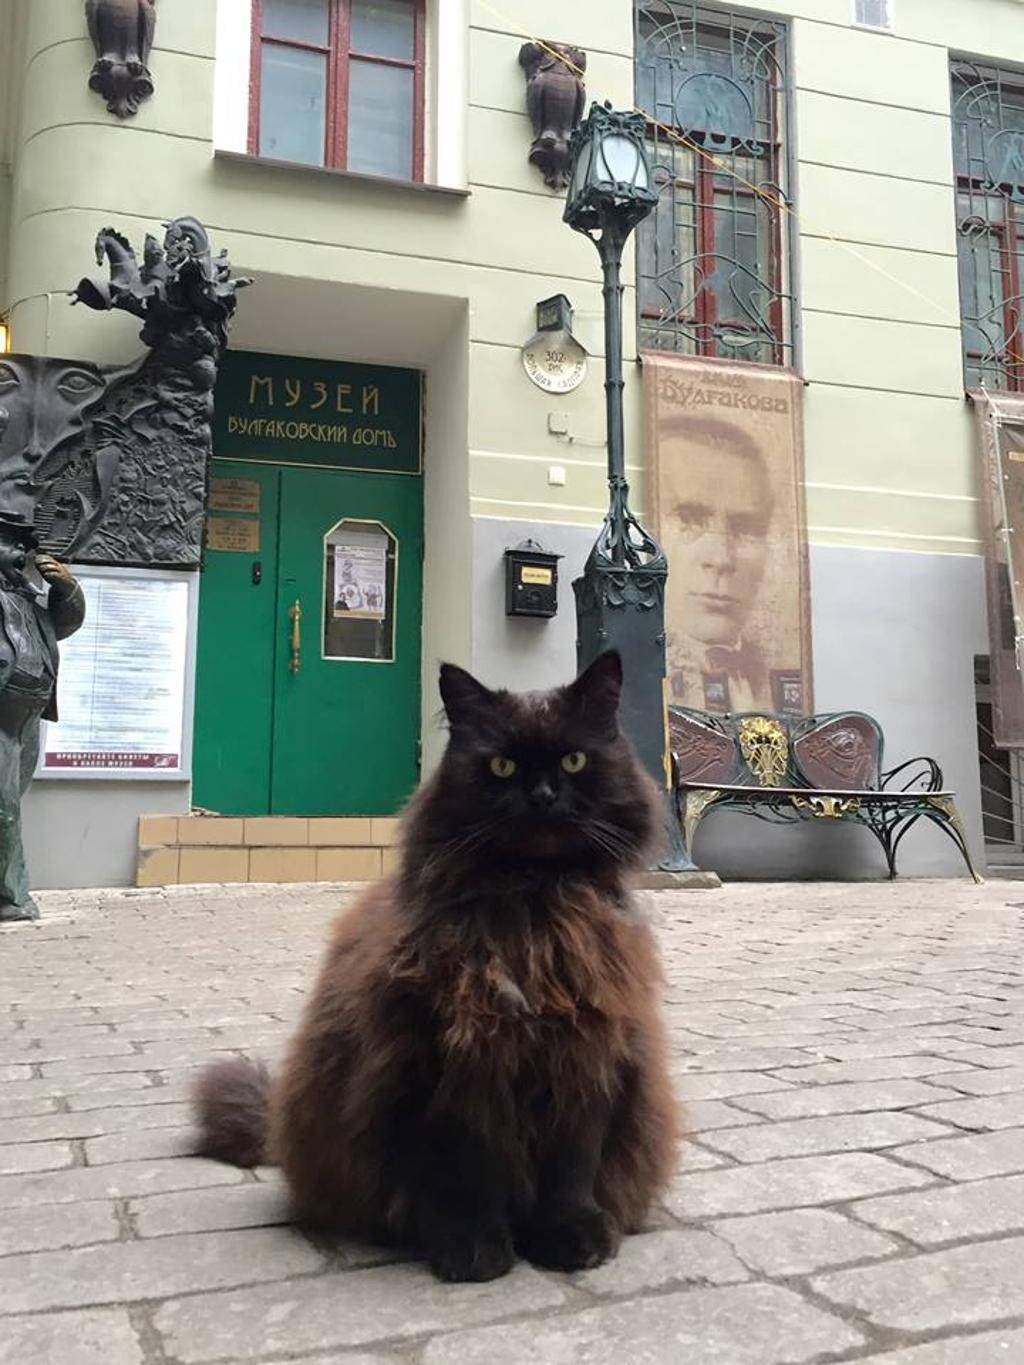 Giallo al museo di Mosca: rapito (e riconsegnato) il "gatto di Bulgakov"